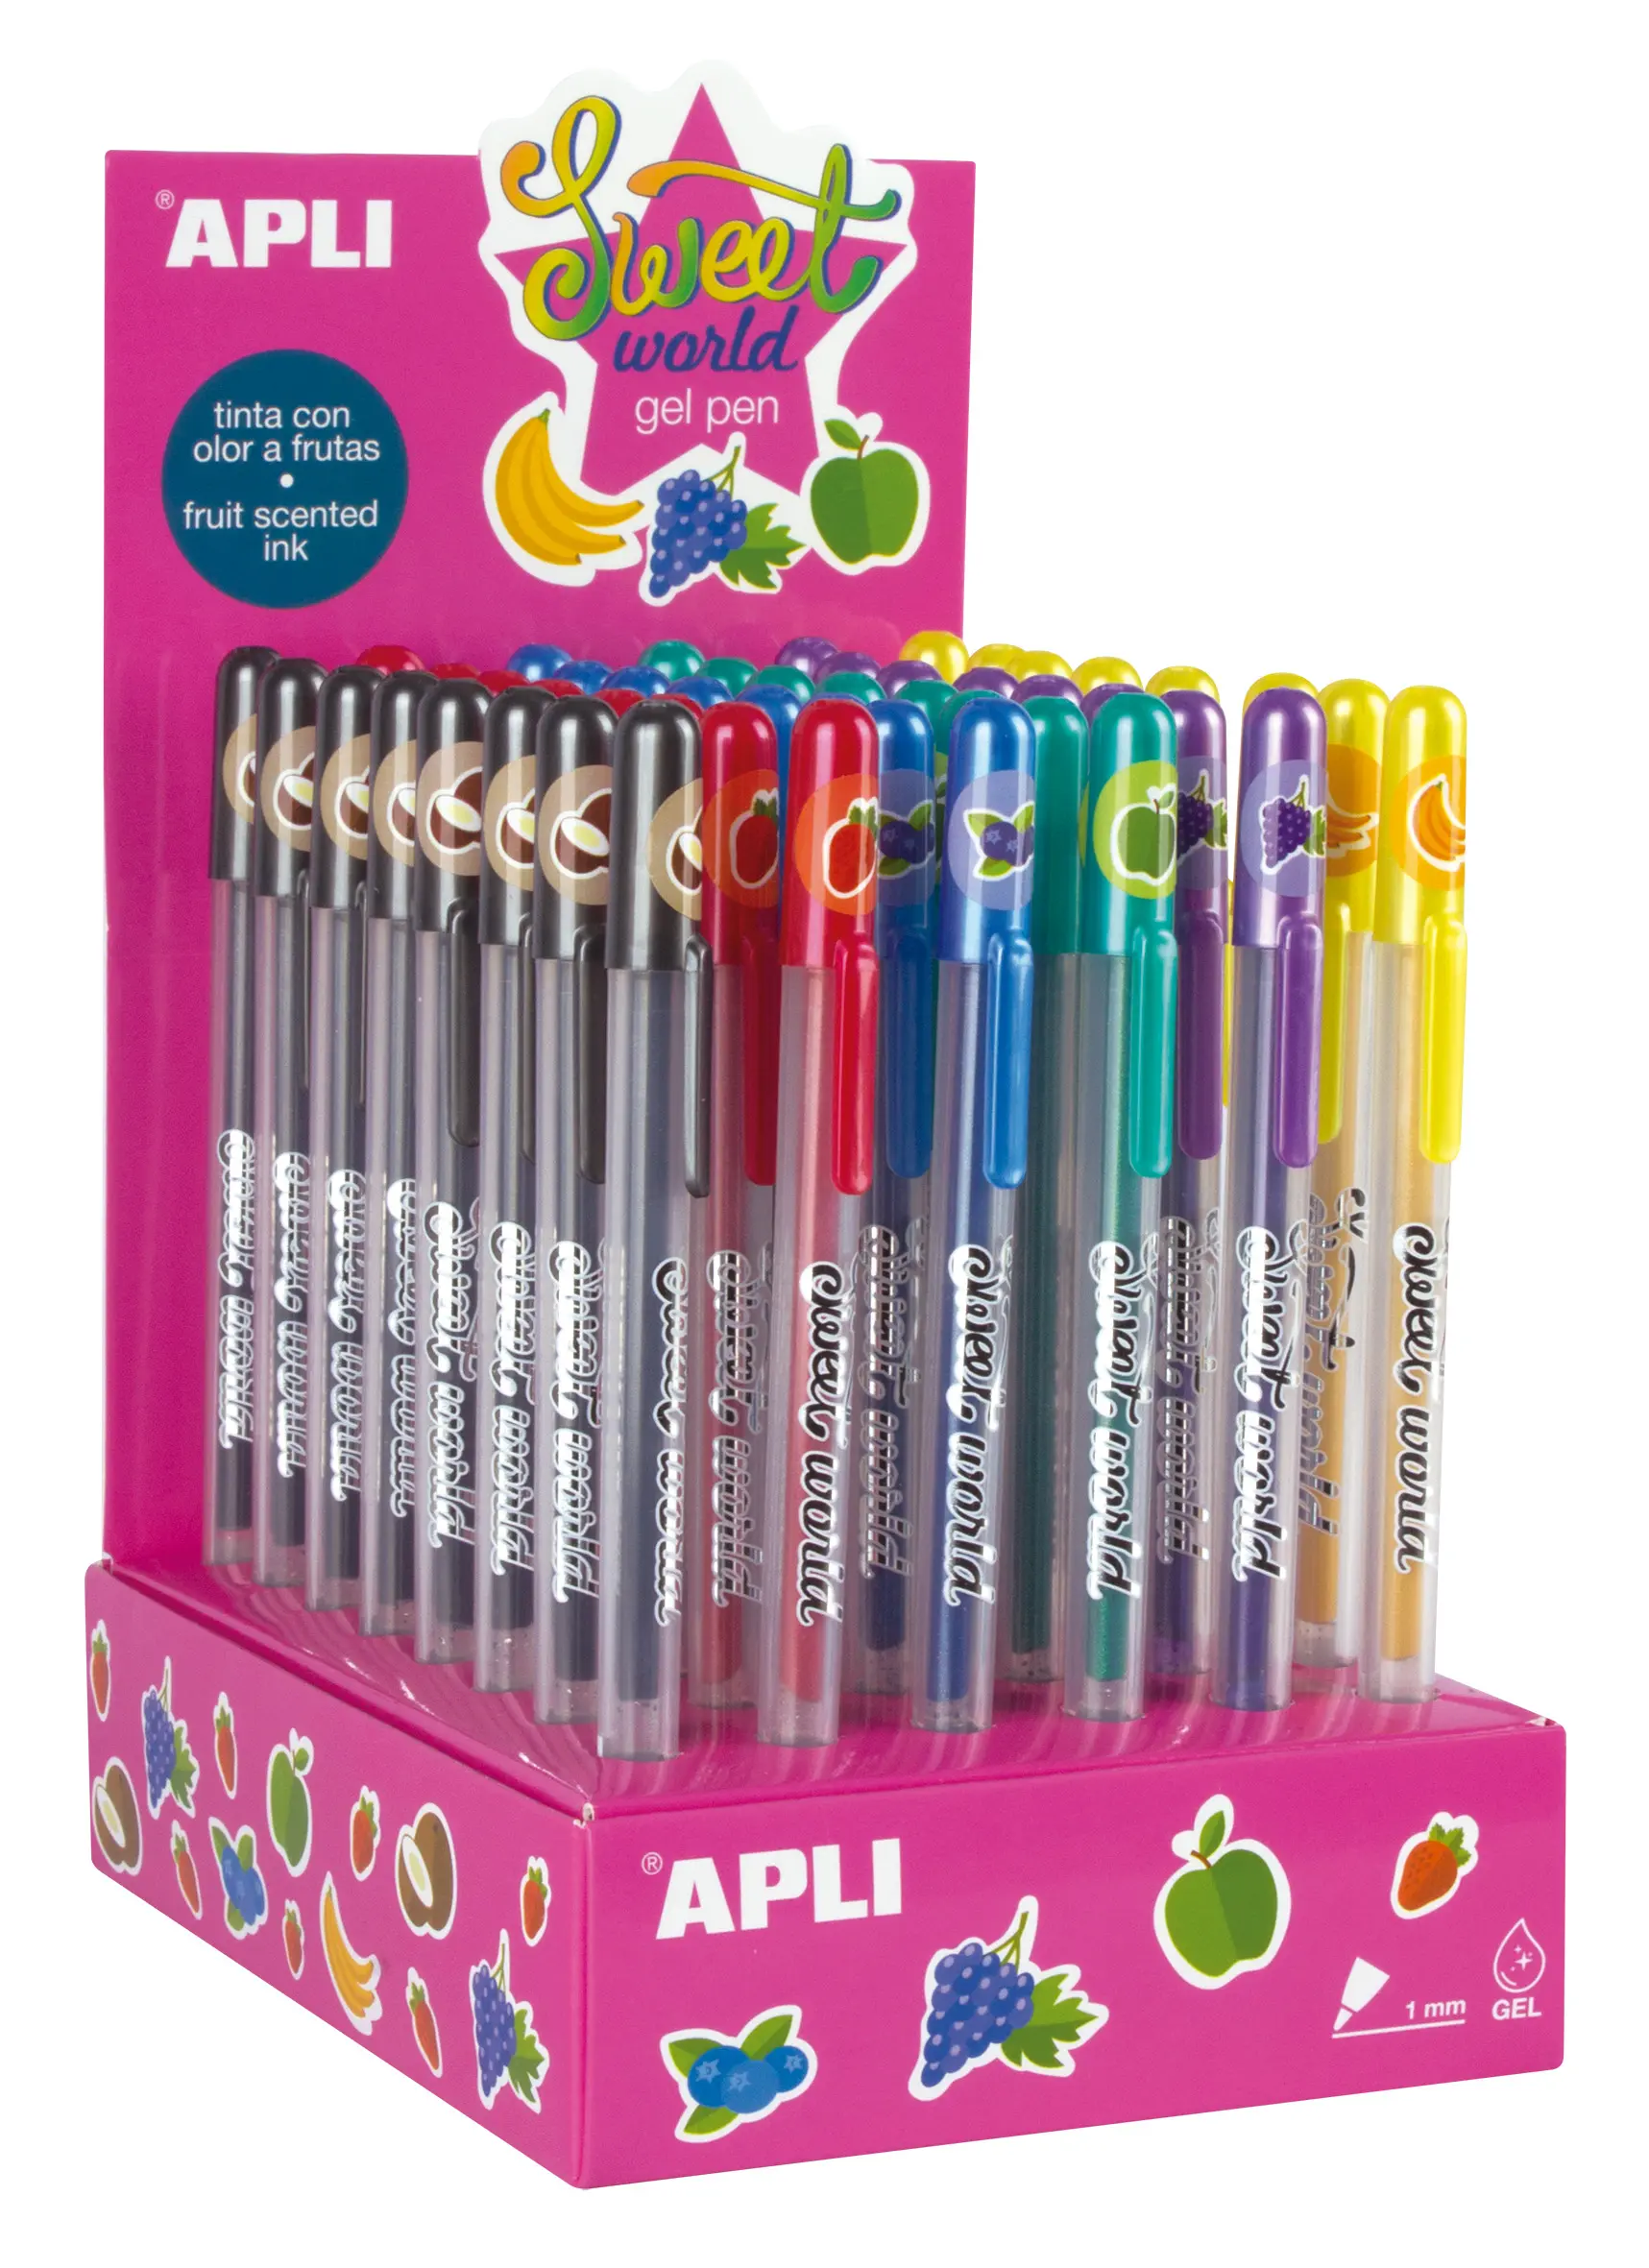 Apli Sweet World Gel Pen Expositor - 48 Boligrafos de Tinta Gel con Aroma a Frutas - 8 Colores Surti